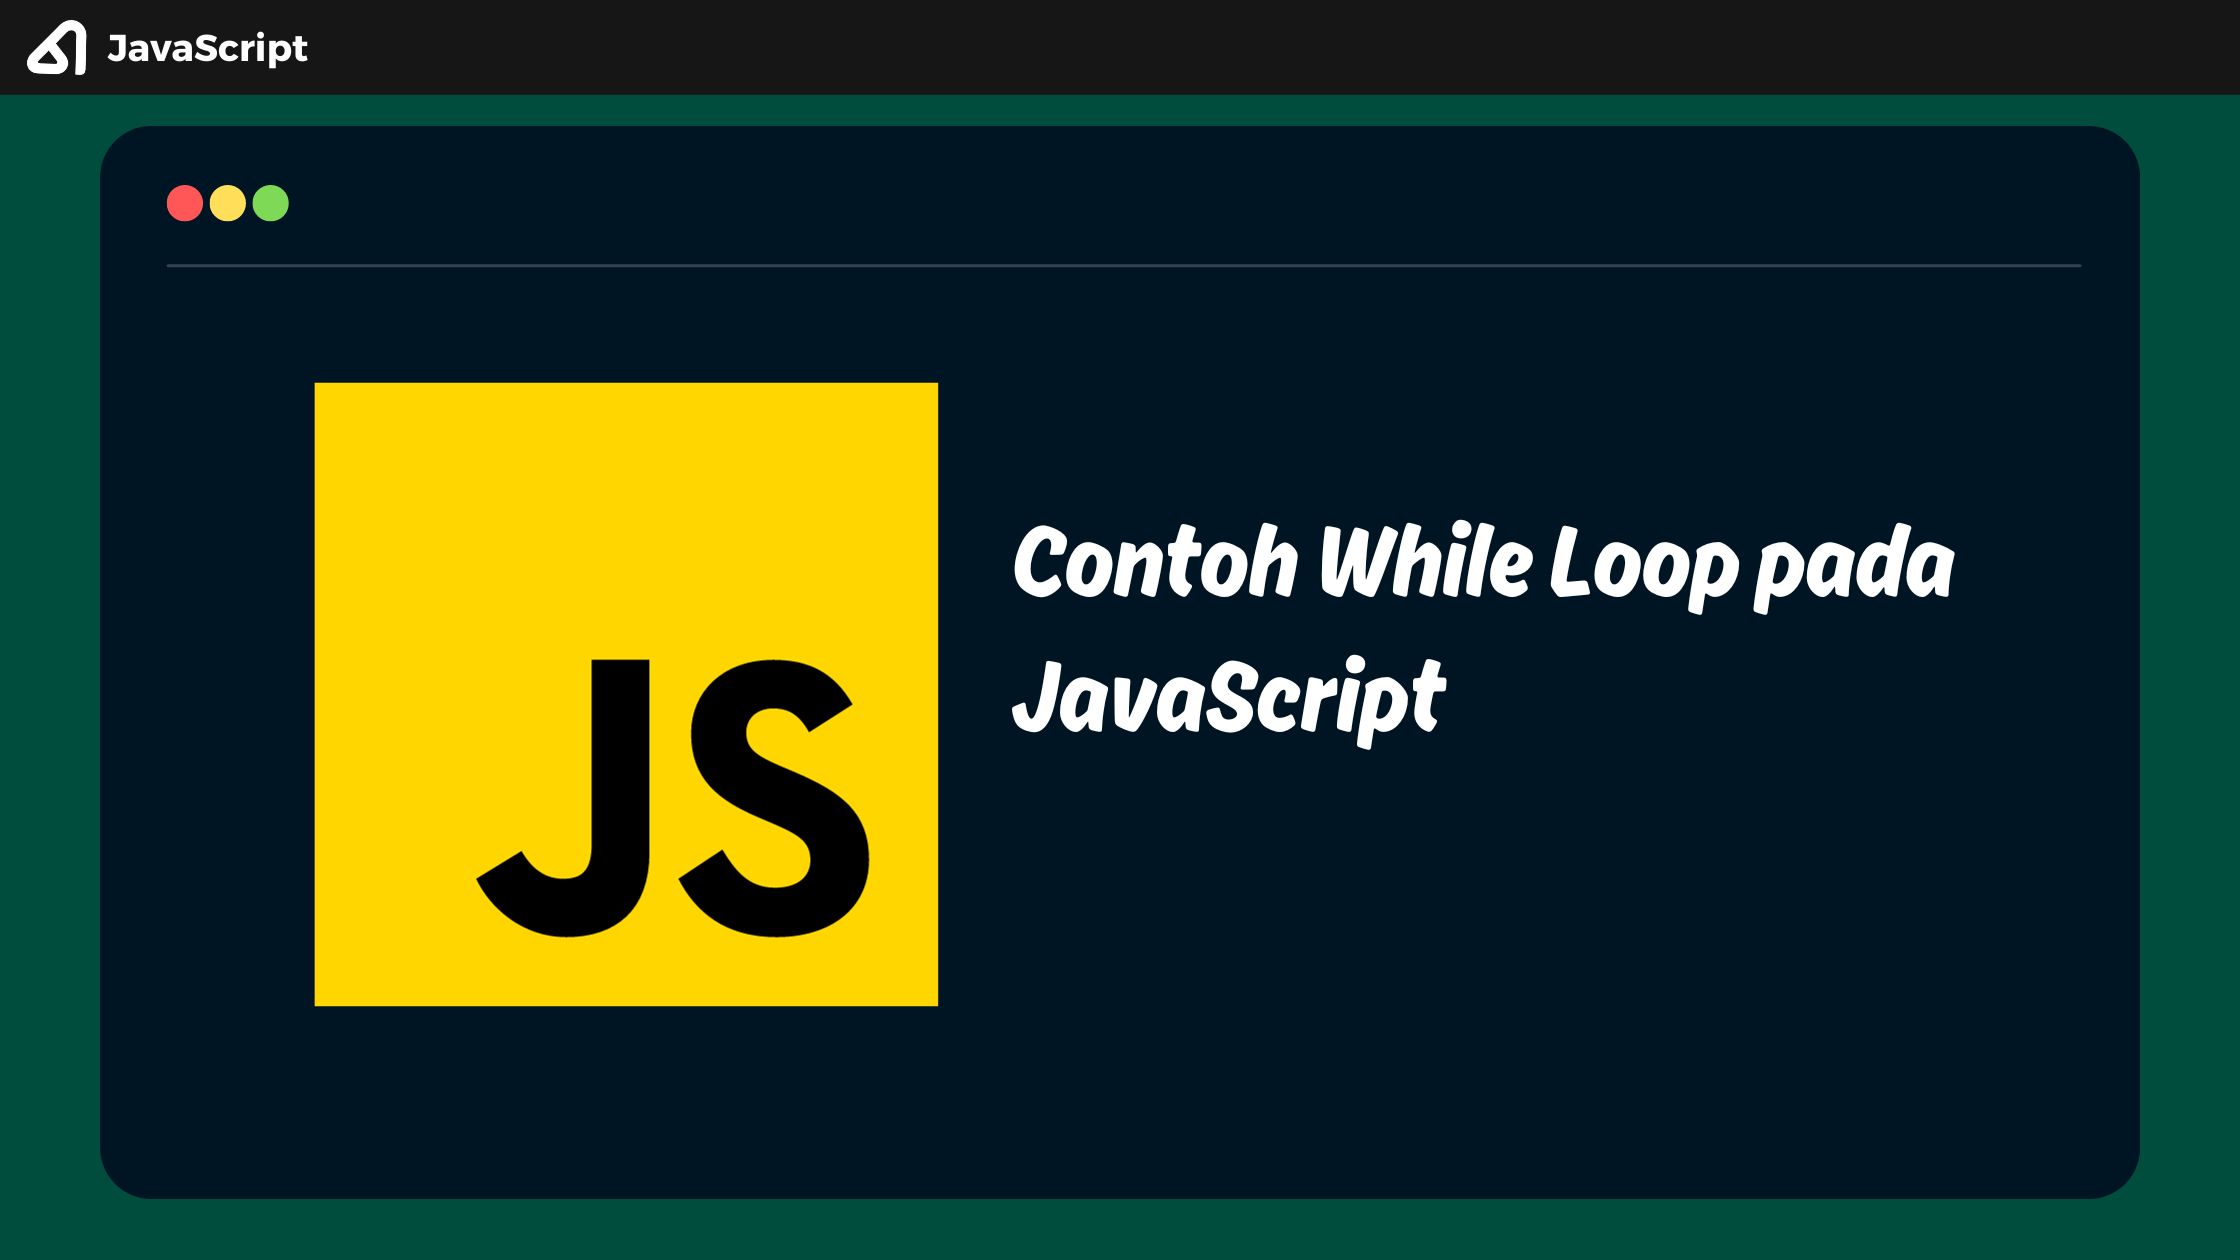 Contoh While Loop pada JavaScript